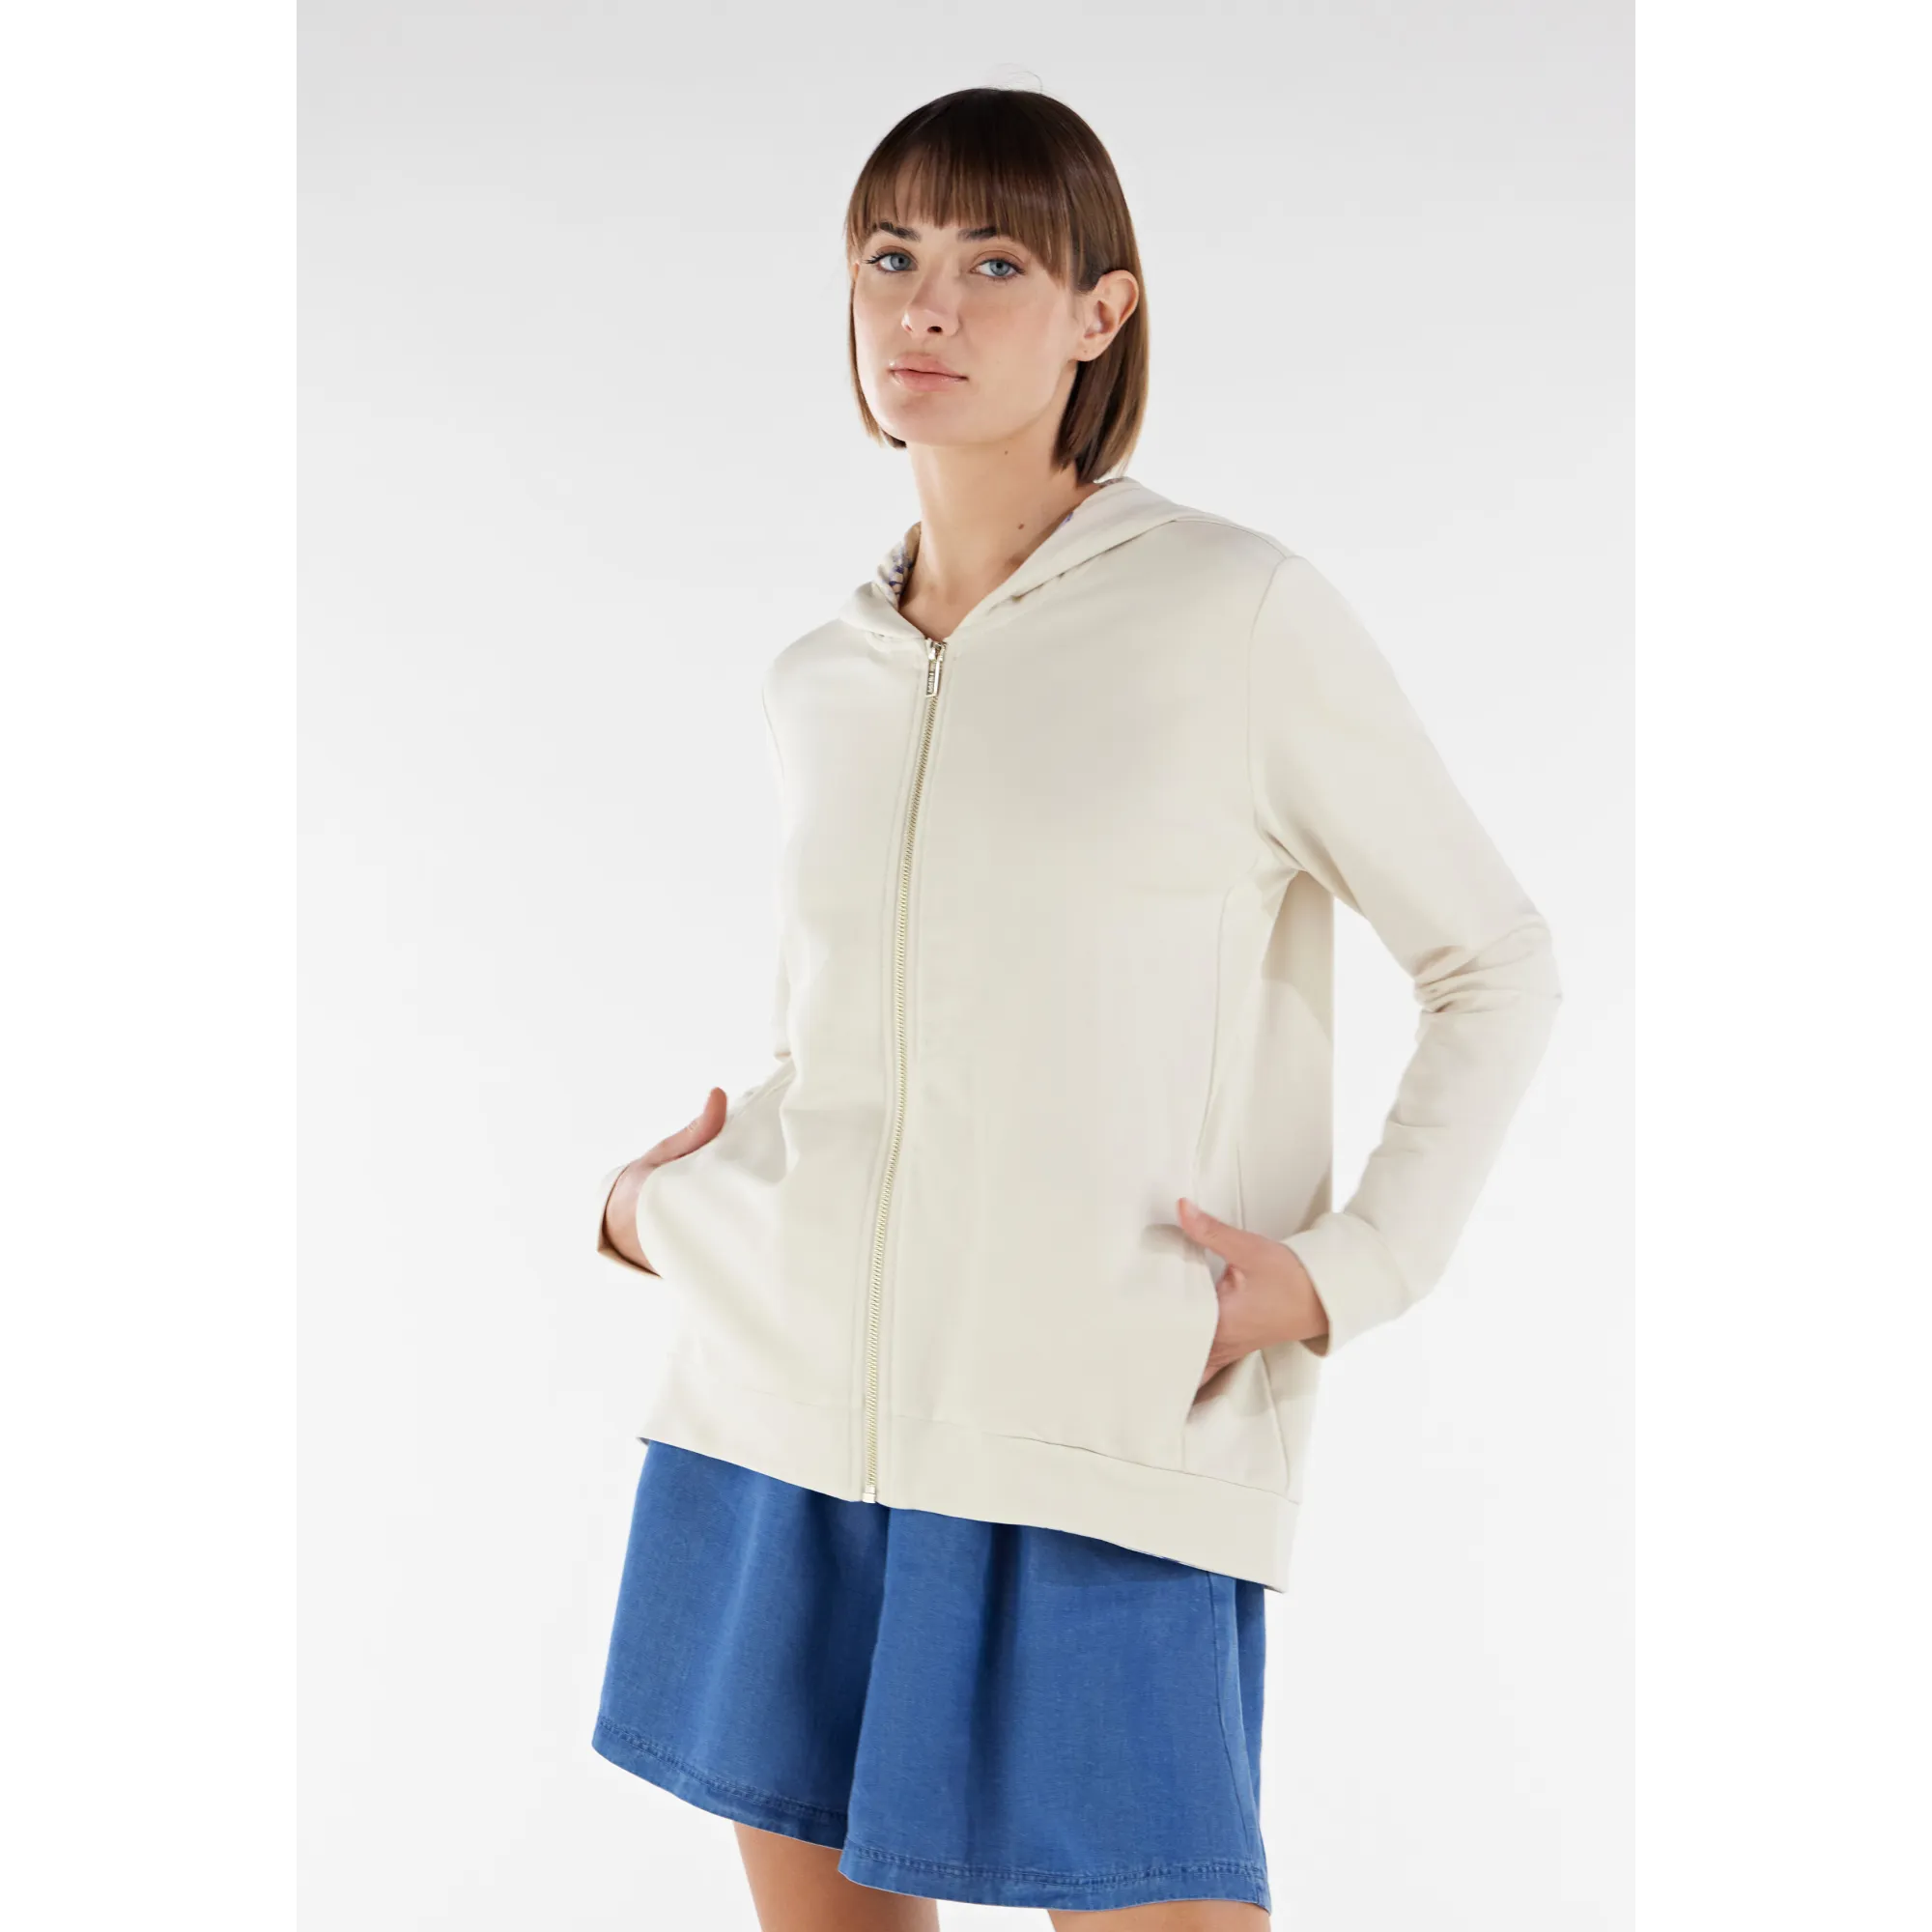 Freddy Damen Sweatshirt - Comfort Fit - Mit Kapuze und Zipper - Weiß - Flower-Print Inside - WFLO56